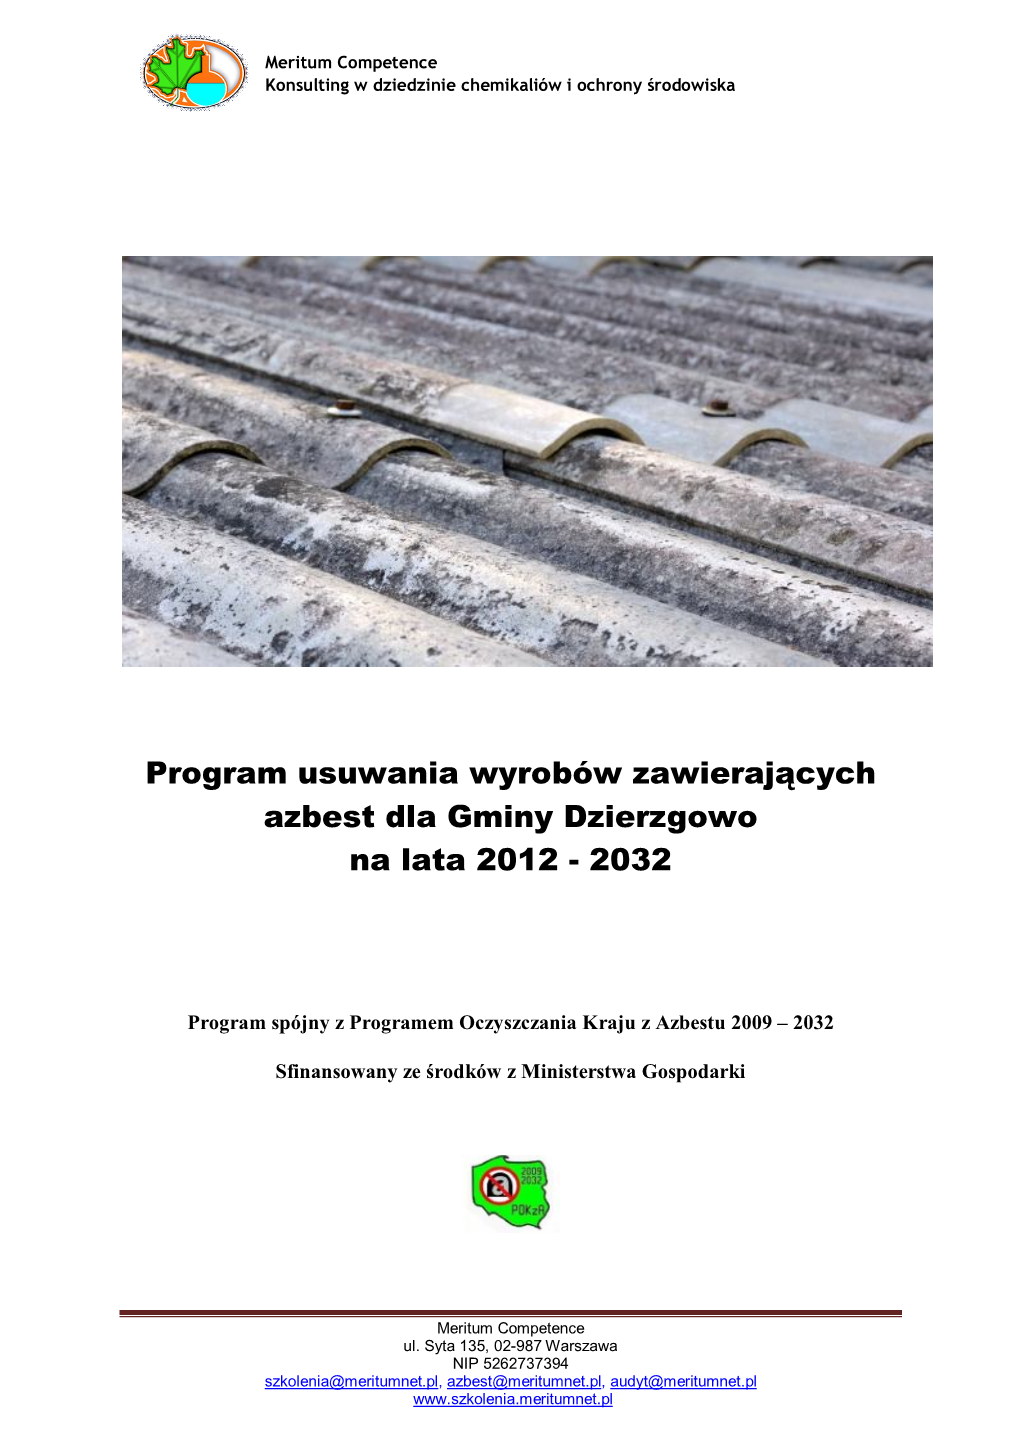 Program Usuwania Wyrobów Zawierających Azbest Dla Gminy Dzierzgowo Na Lata 2012 - 2032